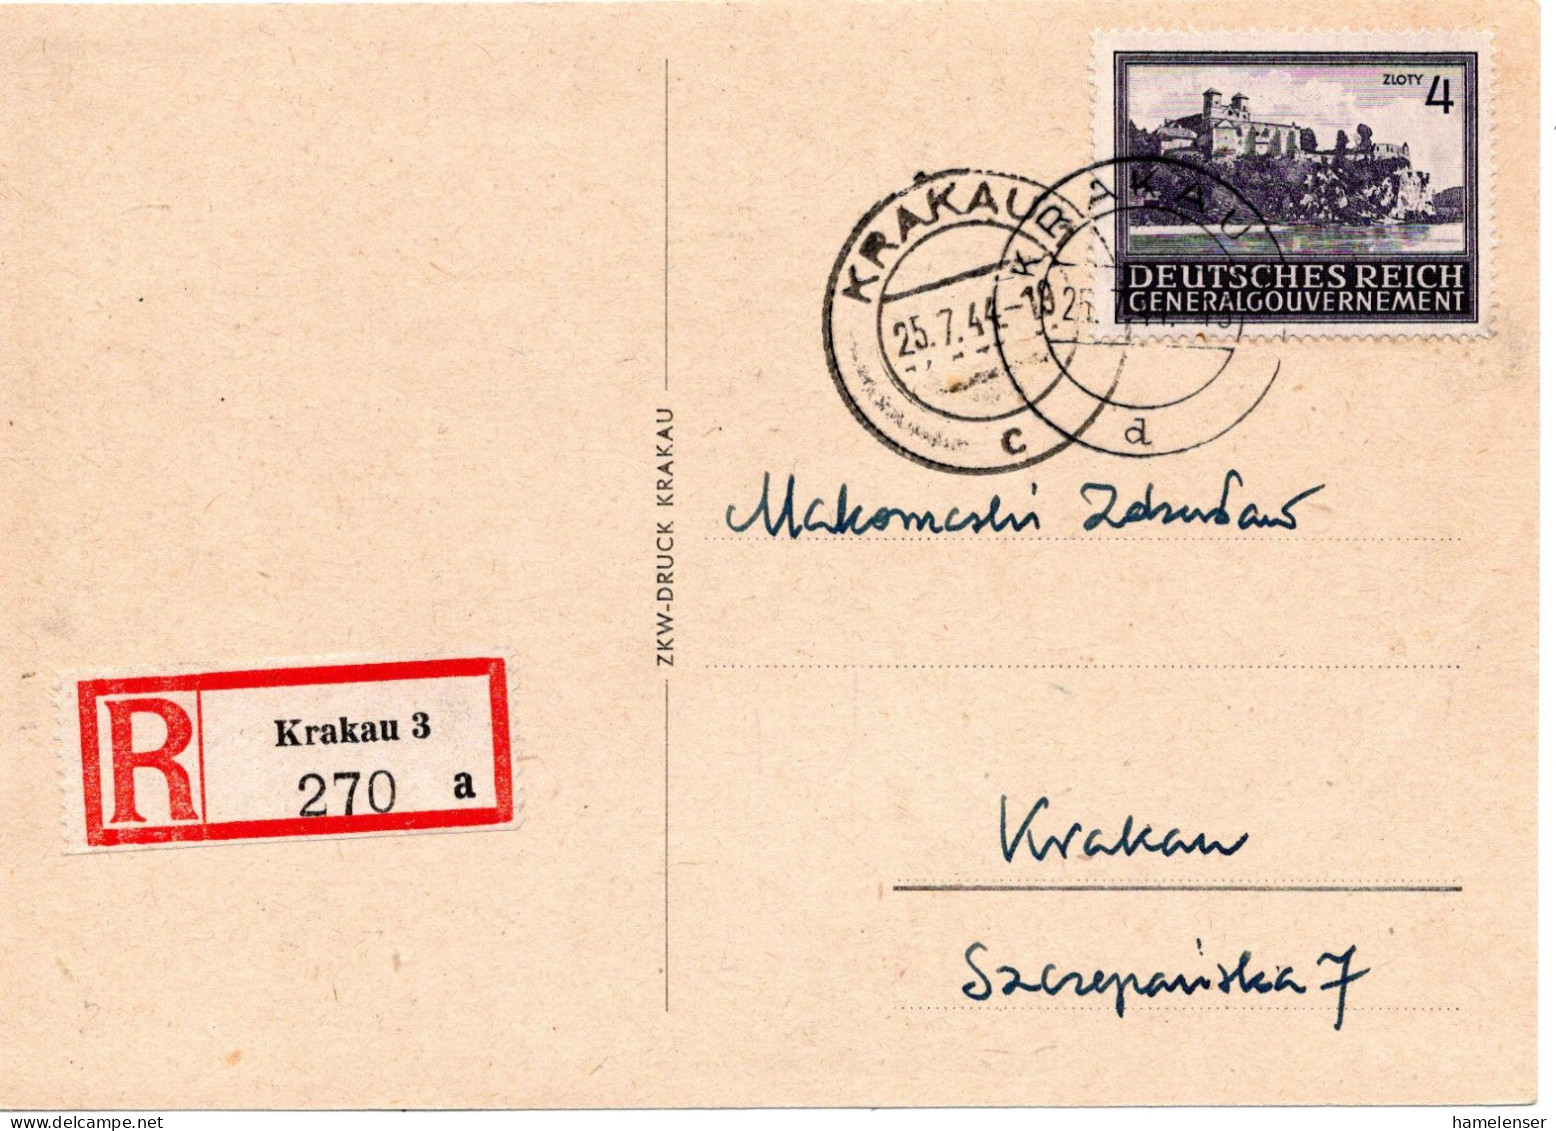 61154 - Deutsches Reich / Generalgouvernement - 1944 - Zl.4 Bauwerke EF A OrtsR-AnsKte KRAKAU - General Government